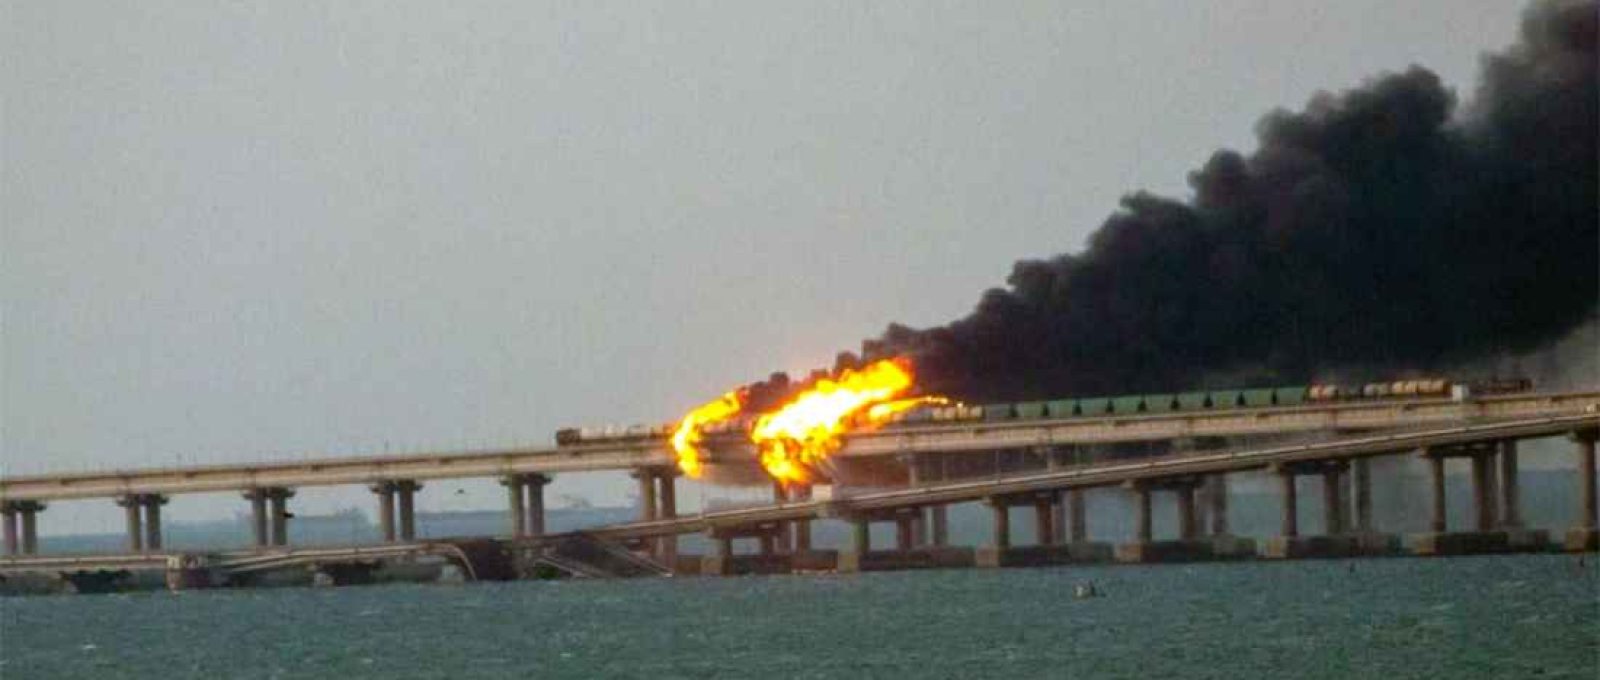 Ponte da Crimeia parcialmente destruída e em chamas após explosão (South Front).